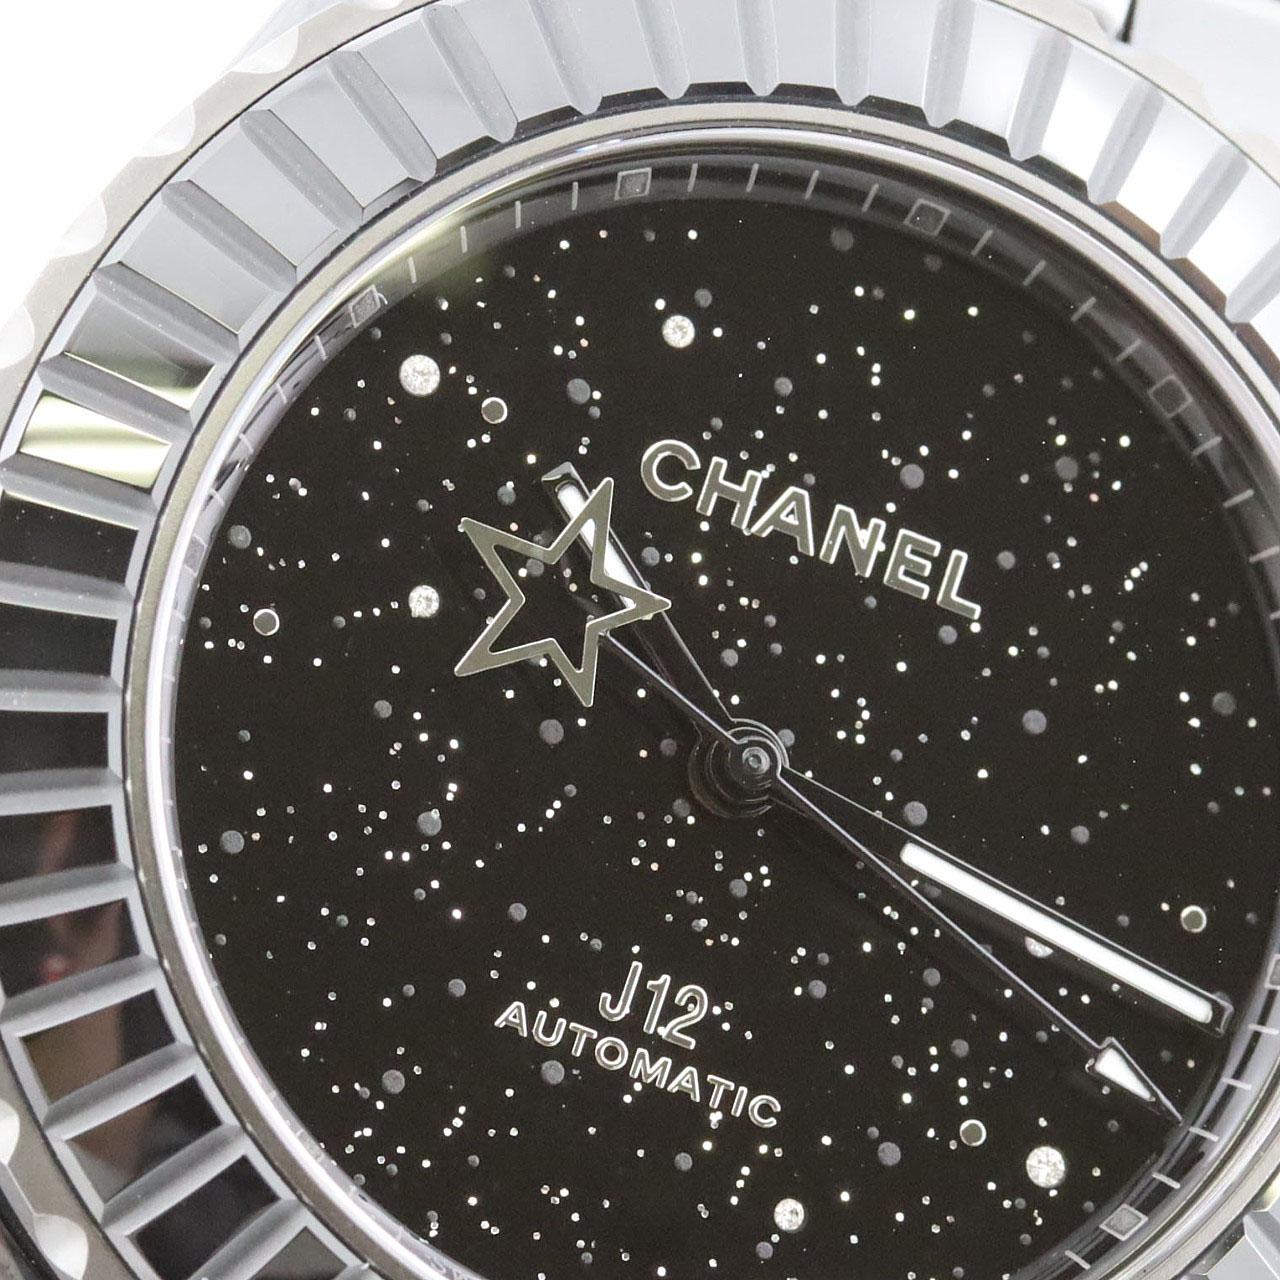 [新品] CHANEL J12 Interstellar Calibre 12.1 38mm 限量版 H7989 陶瓷自動上弦